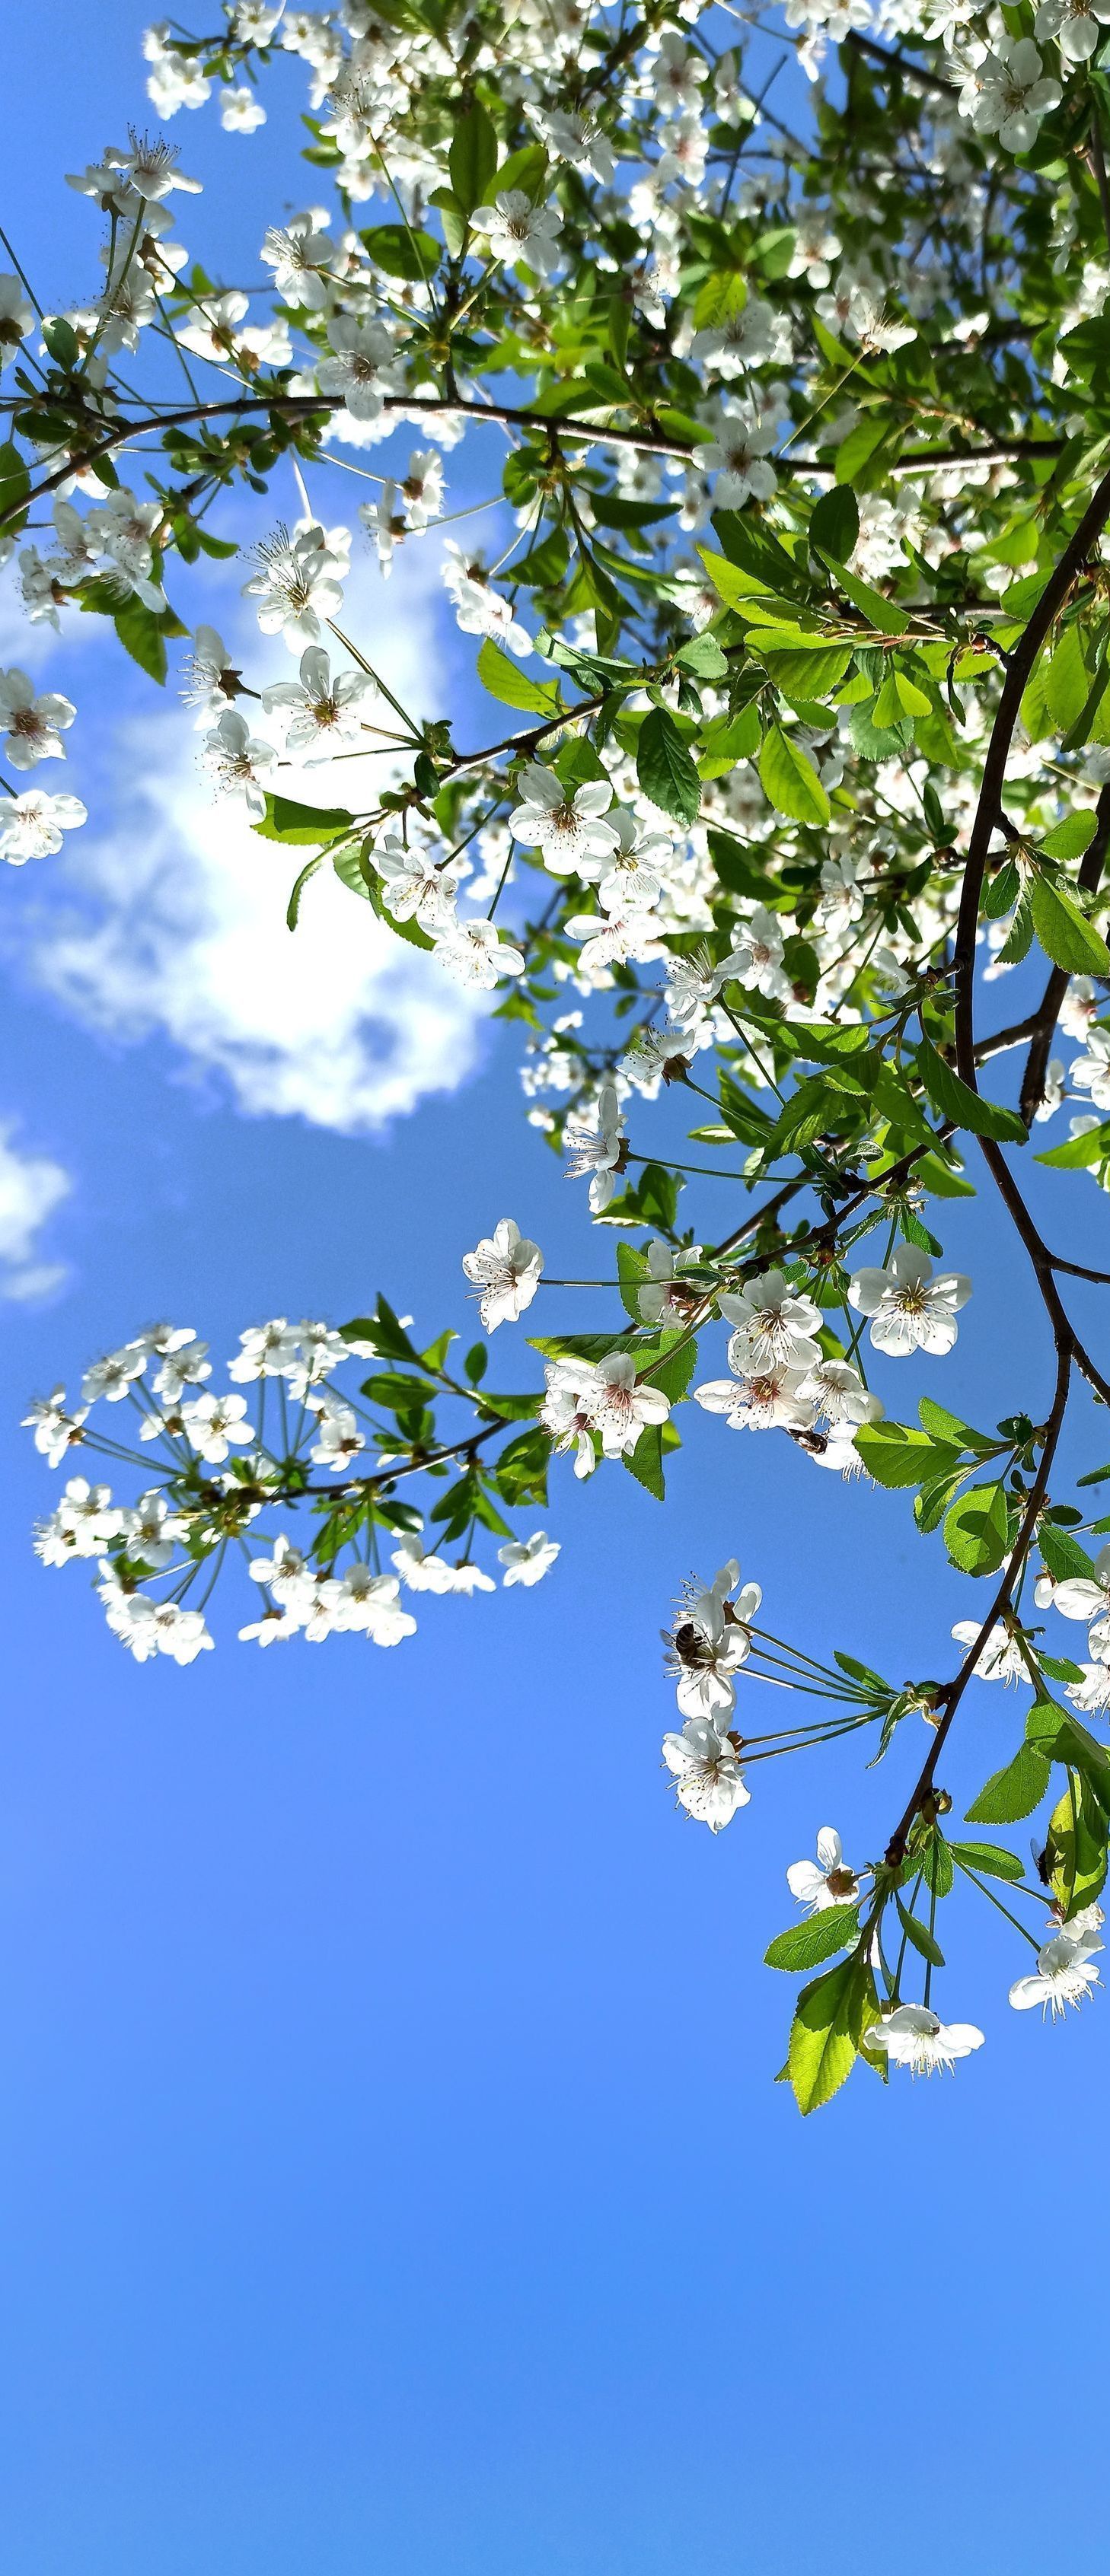 a flowering tree